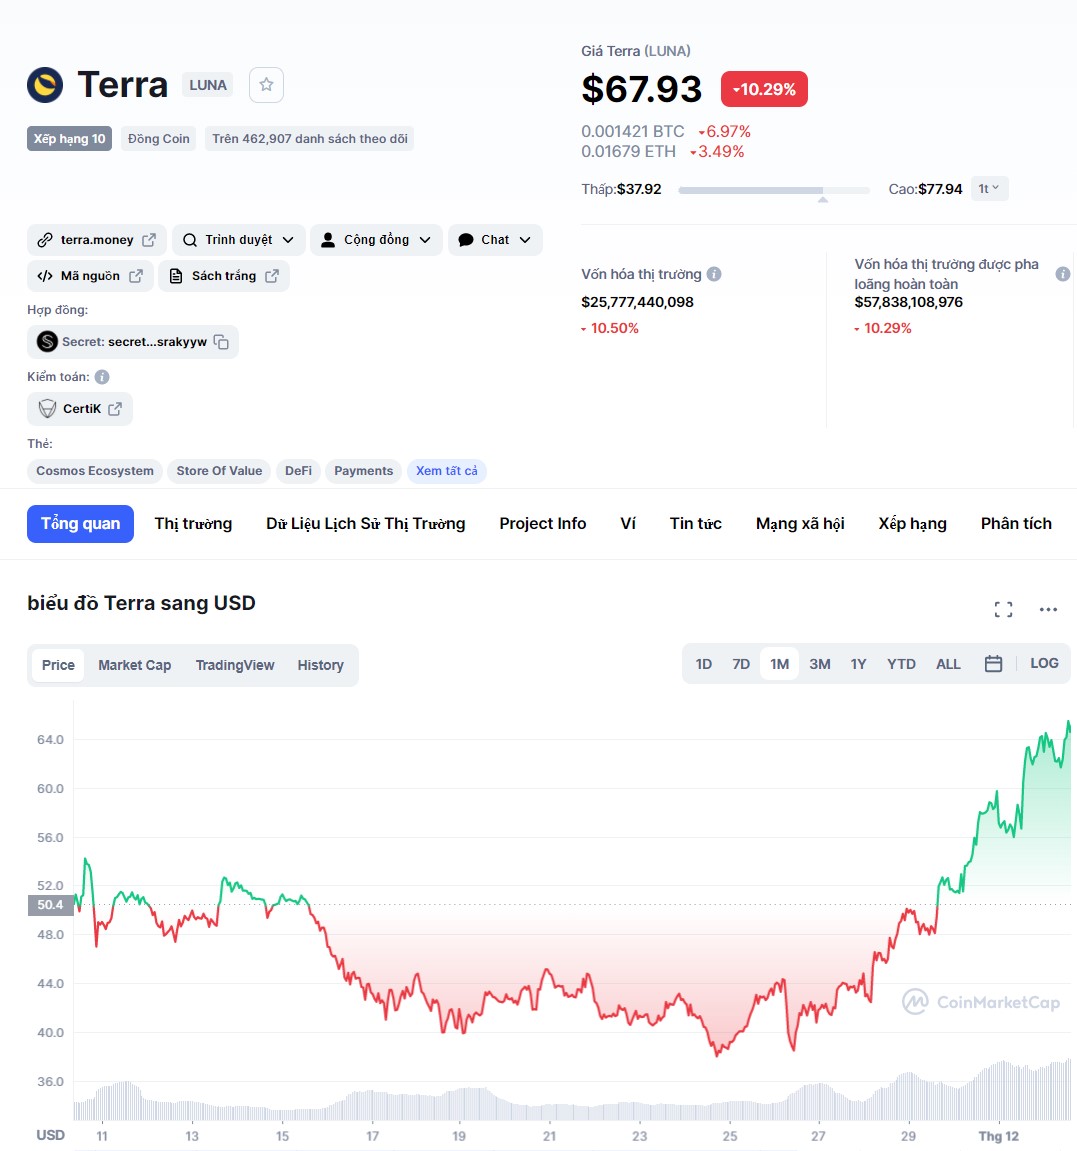 ViMoney: Giá Terra điều chỉnh trong ngắn hạn - Cơ hội để bắt đáy LUNA? Biểu đồ giá LUNA